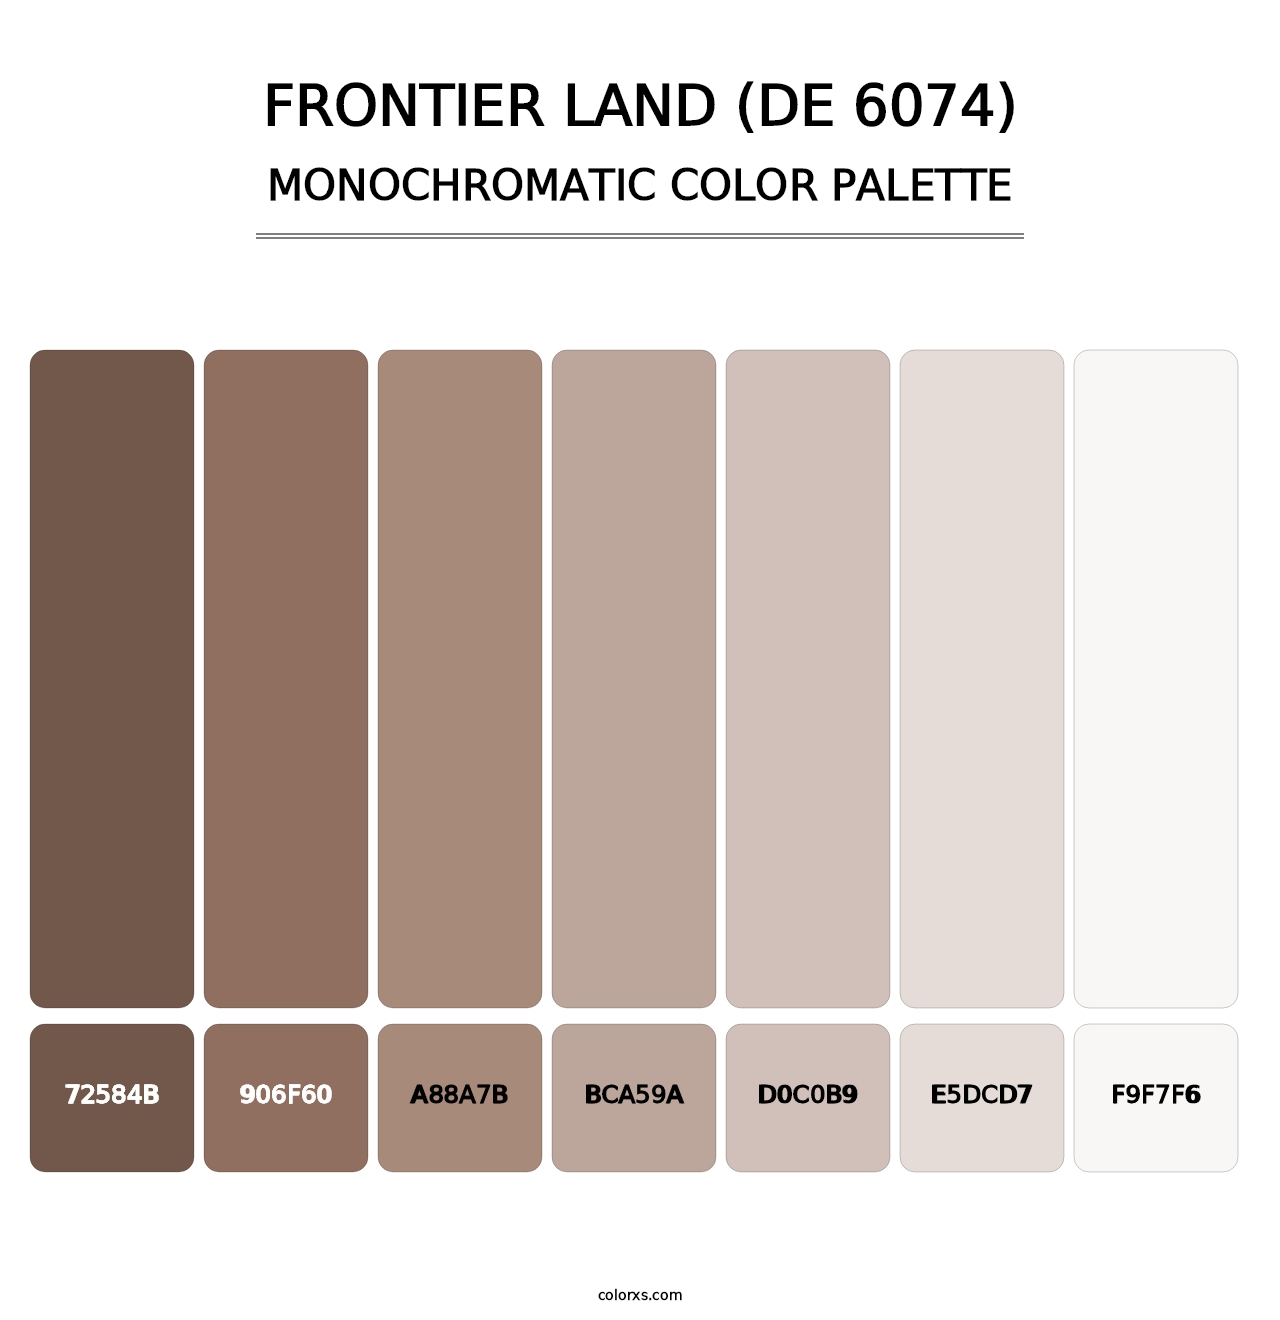 Frontier Land (DE 6074) - Monochromatic Color Palette